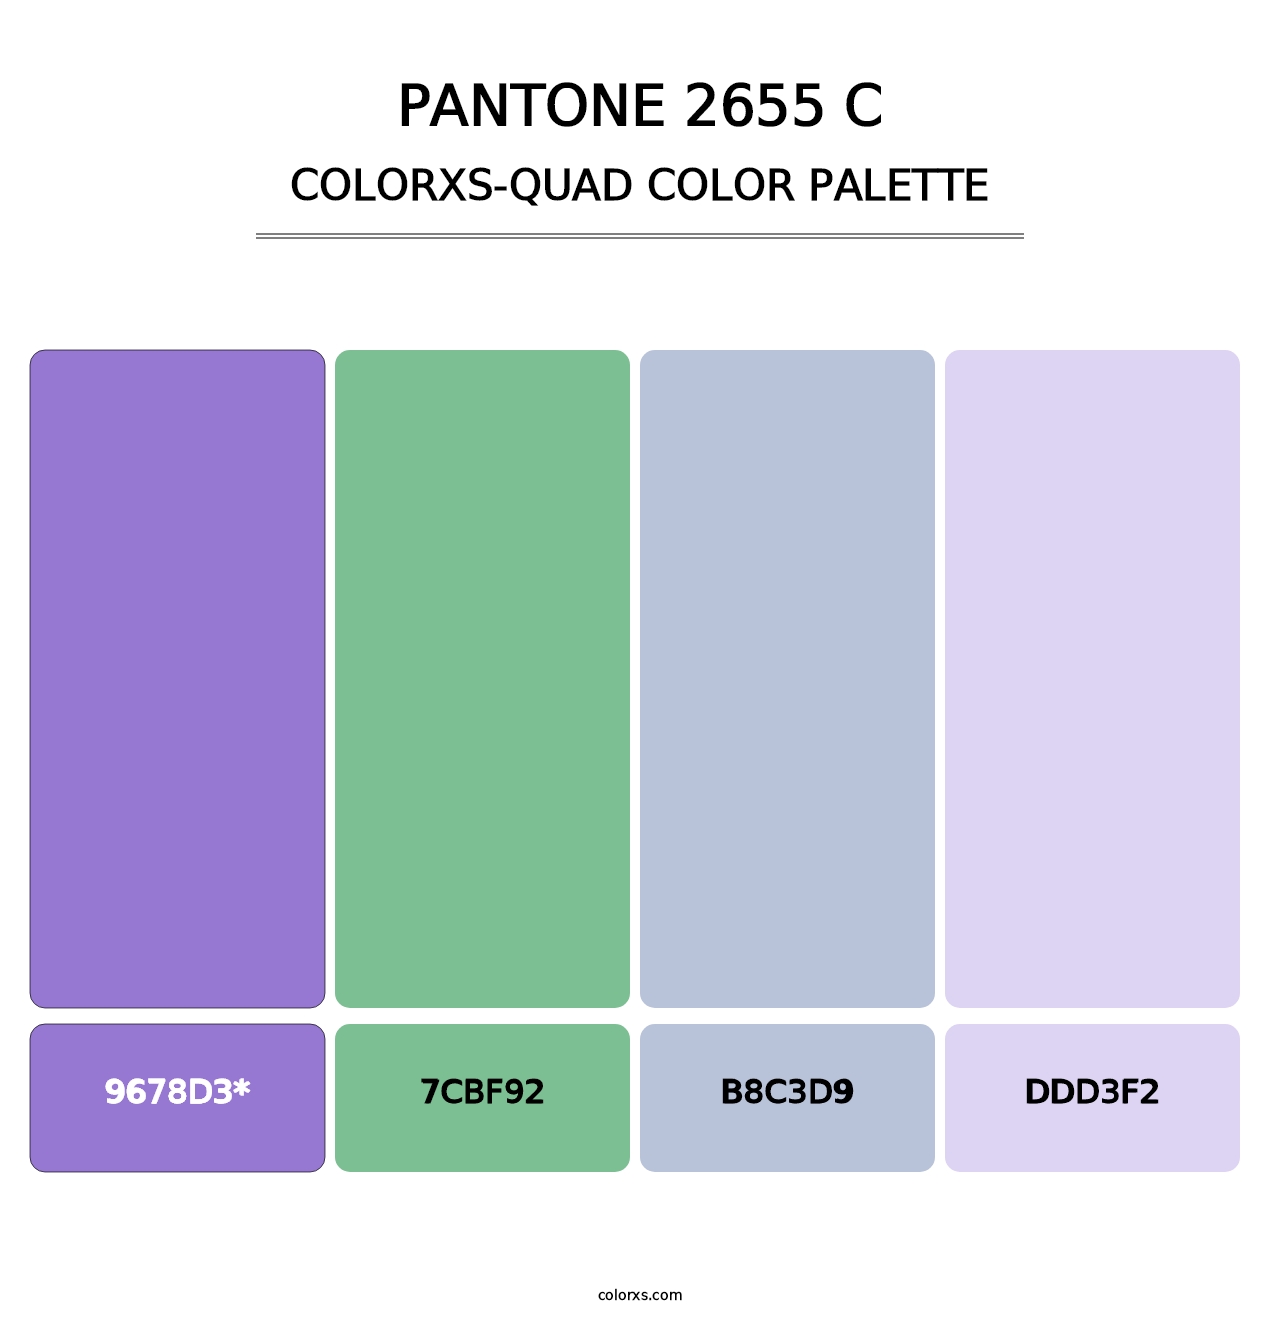 PANTONE 2655 C - Colorxs Quad Palette